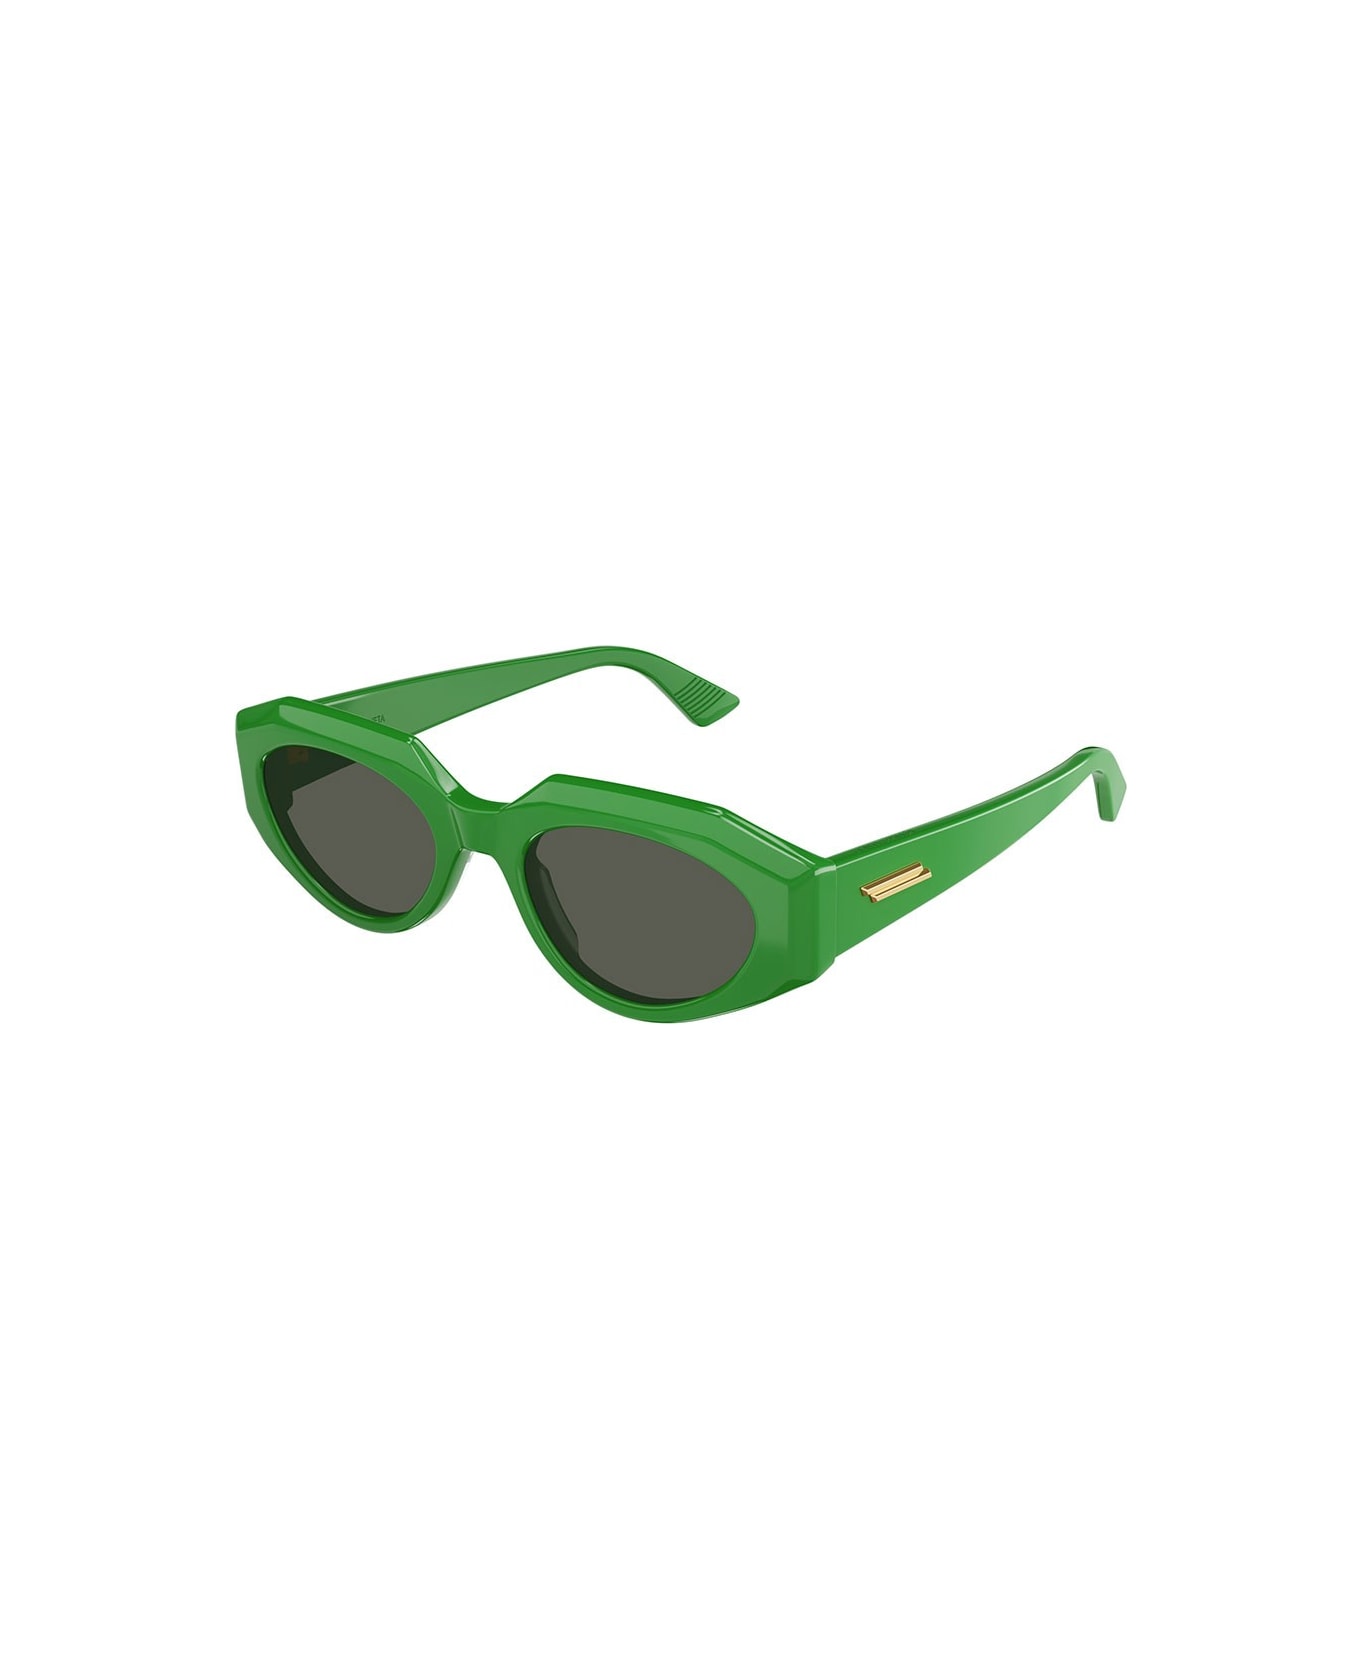 Bottega Veneta Eyewear Eyewear - Verde/Grigio